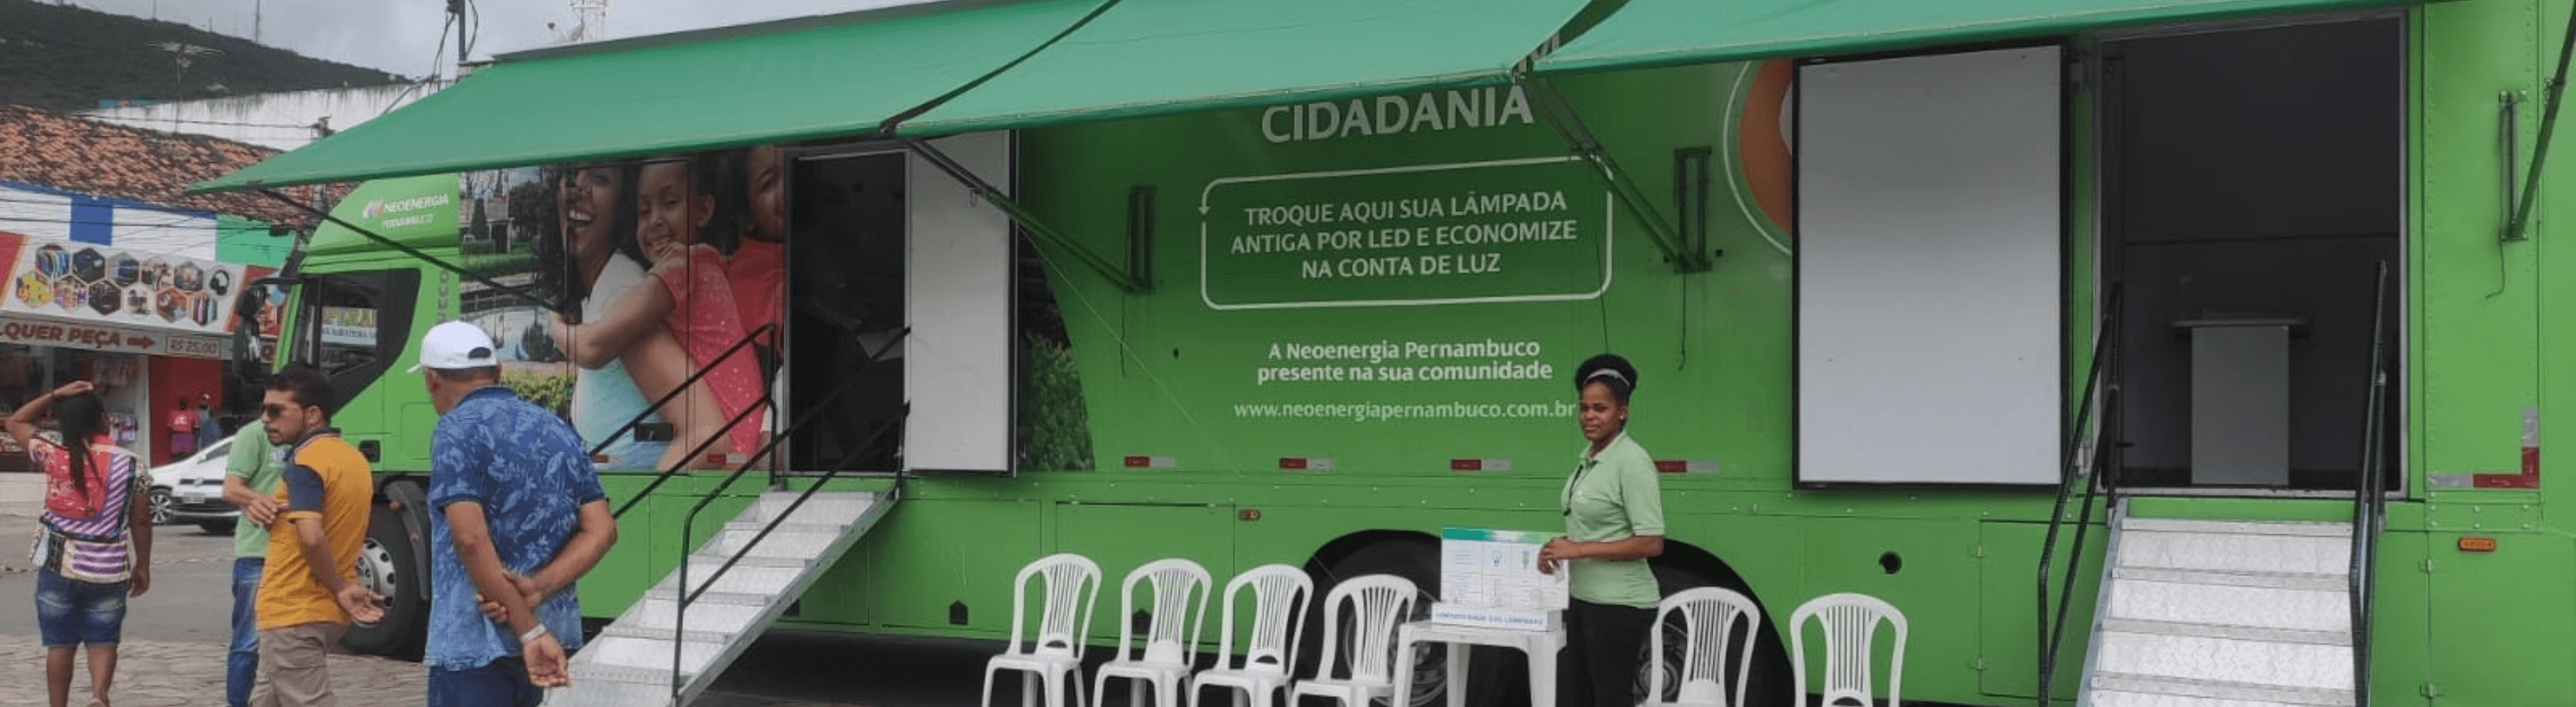 Caminhão do Projeto Energia Com Cidadania da Neoenergia Pernambuco estacionado em atendimento